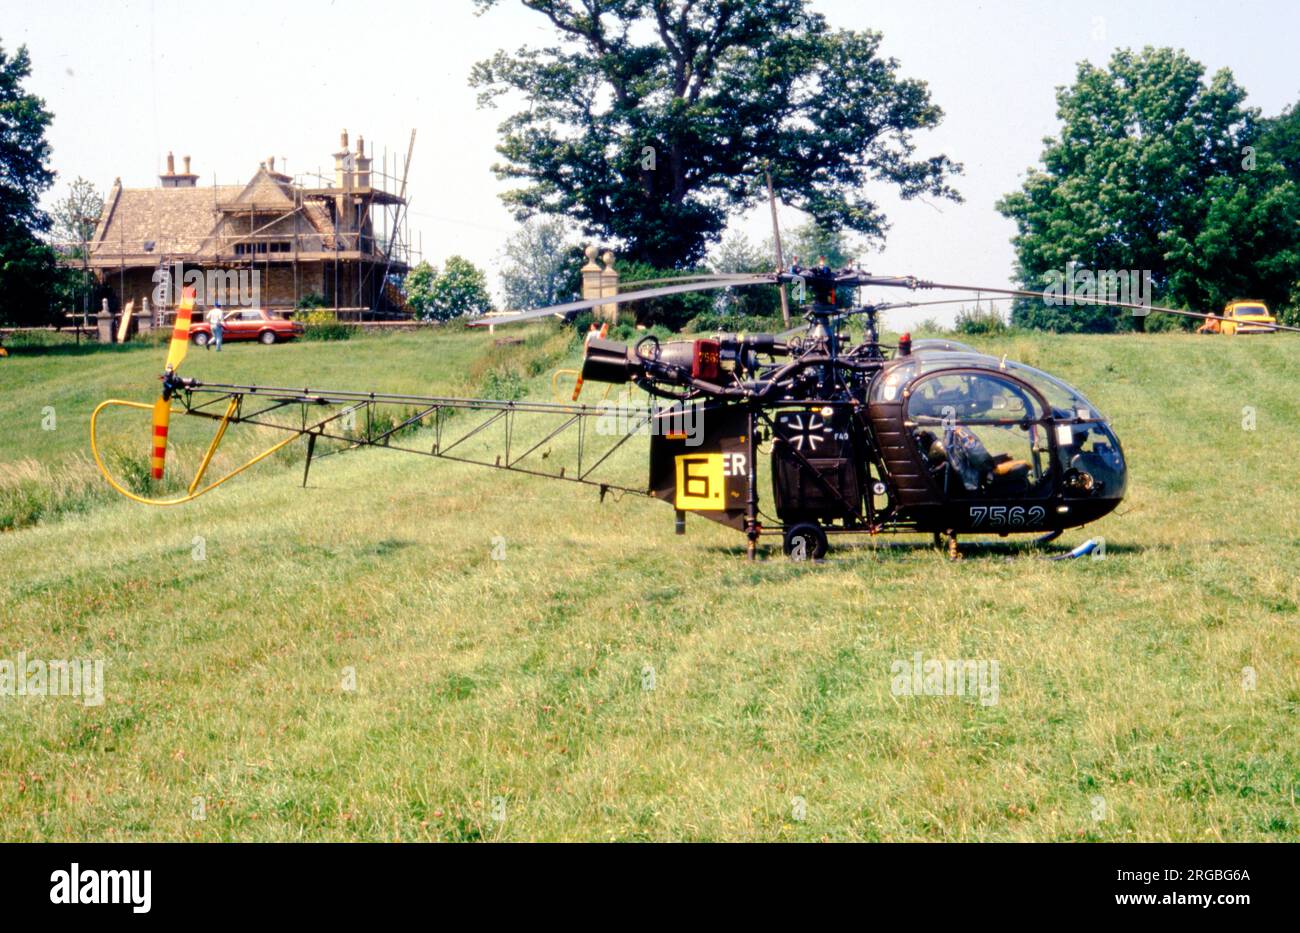 Heeresflieger - Aerospatiale se.3130 Alouette II 75+62 (msn 1432-C198), au Château Ashby pour les Championnats du monde d'hélicoptères, le 26 juin 1986, avec le numéro de compétition '6'. (Heeresflieger - Aviation militaire allemande). Banque D'Images